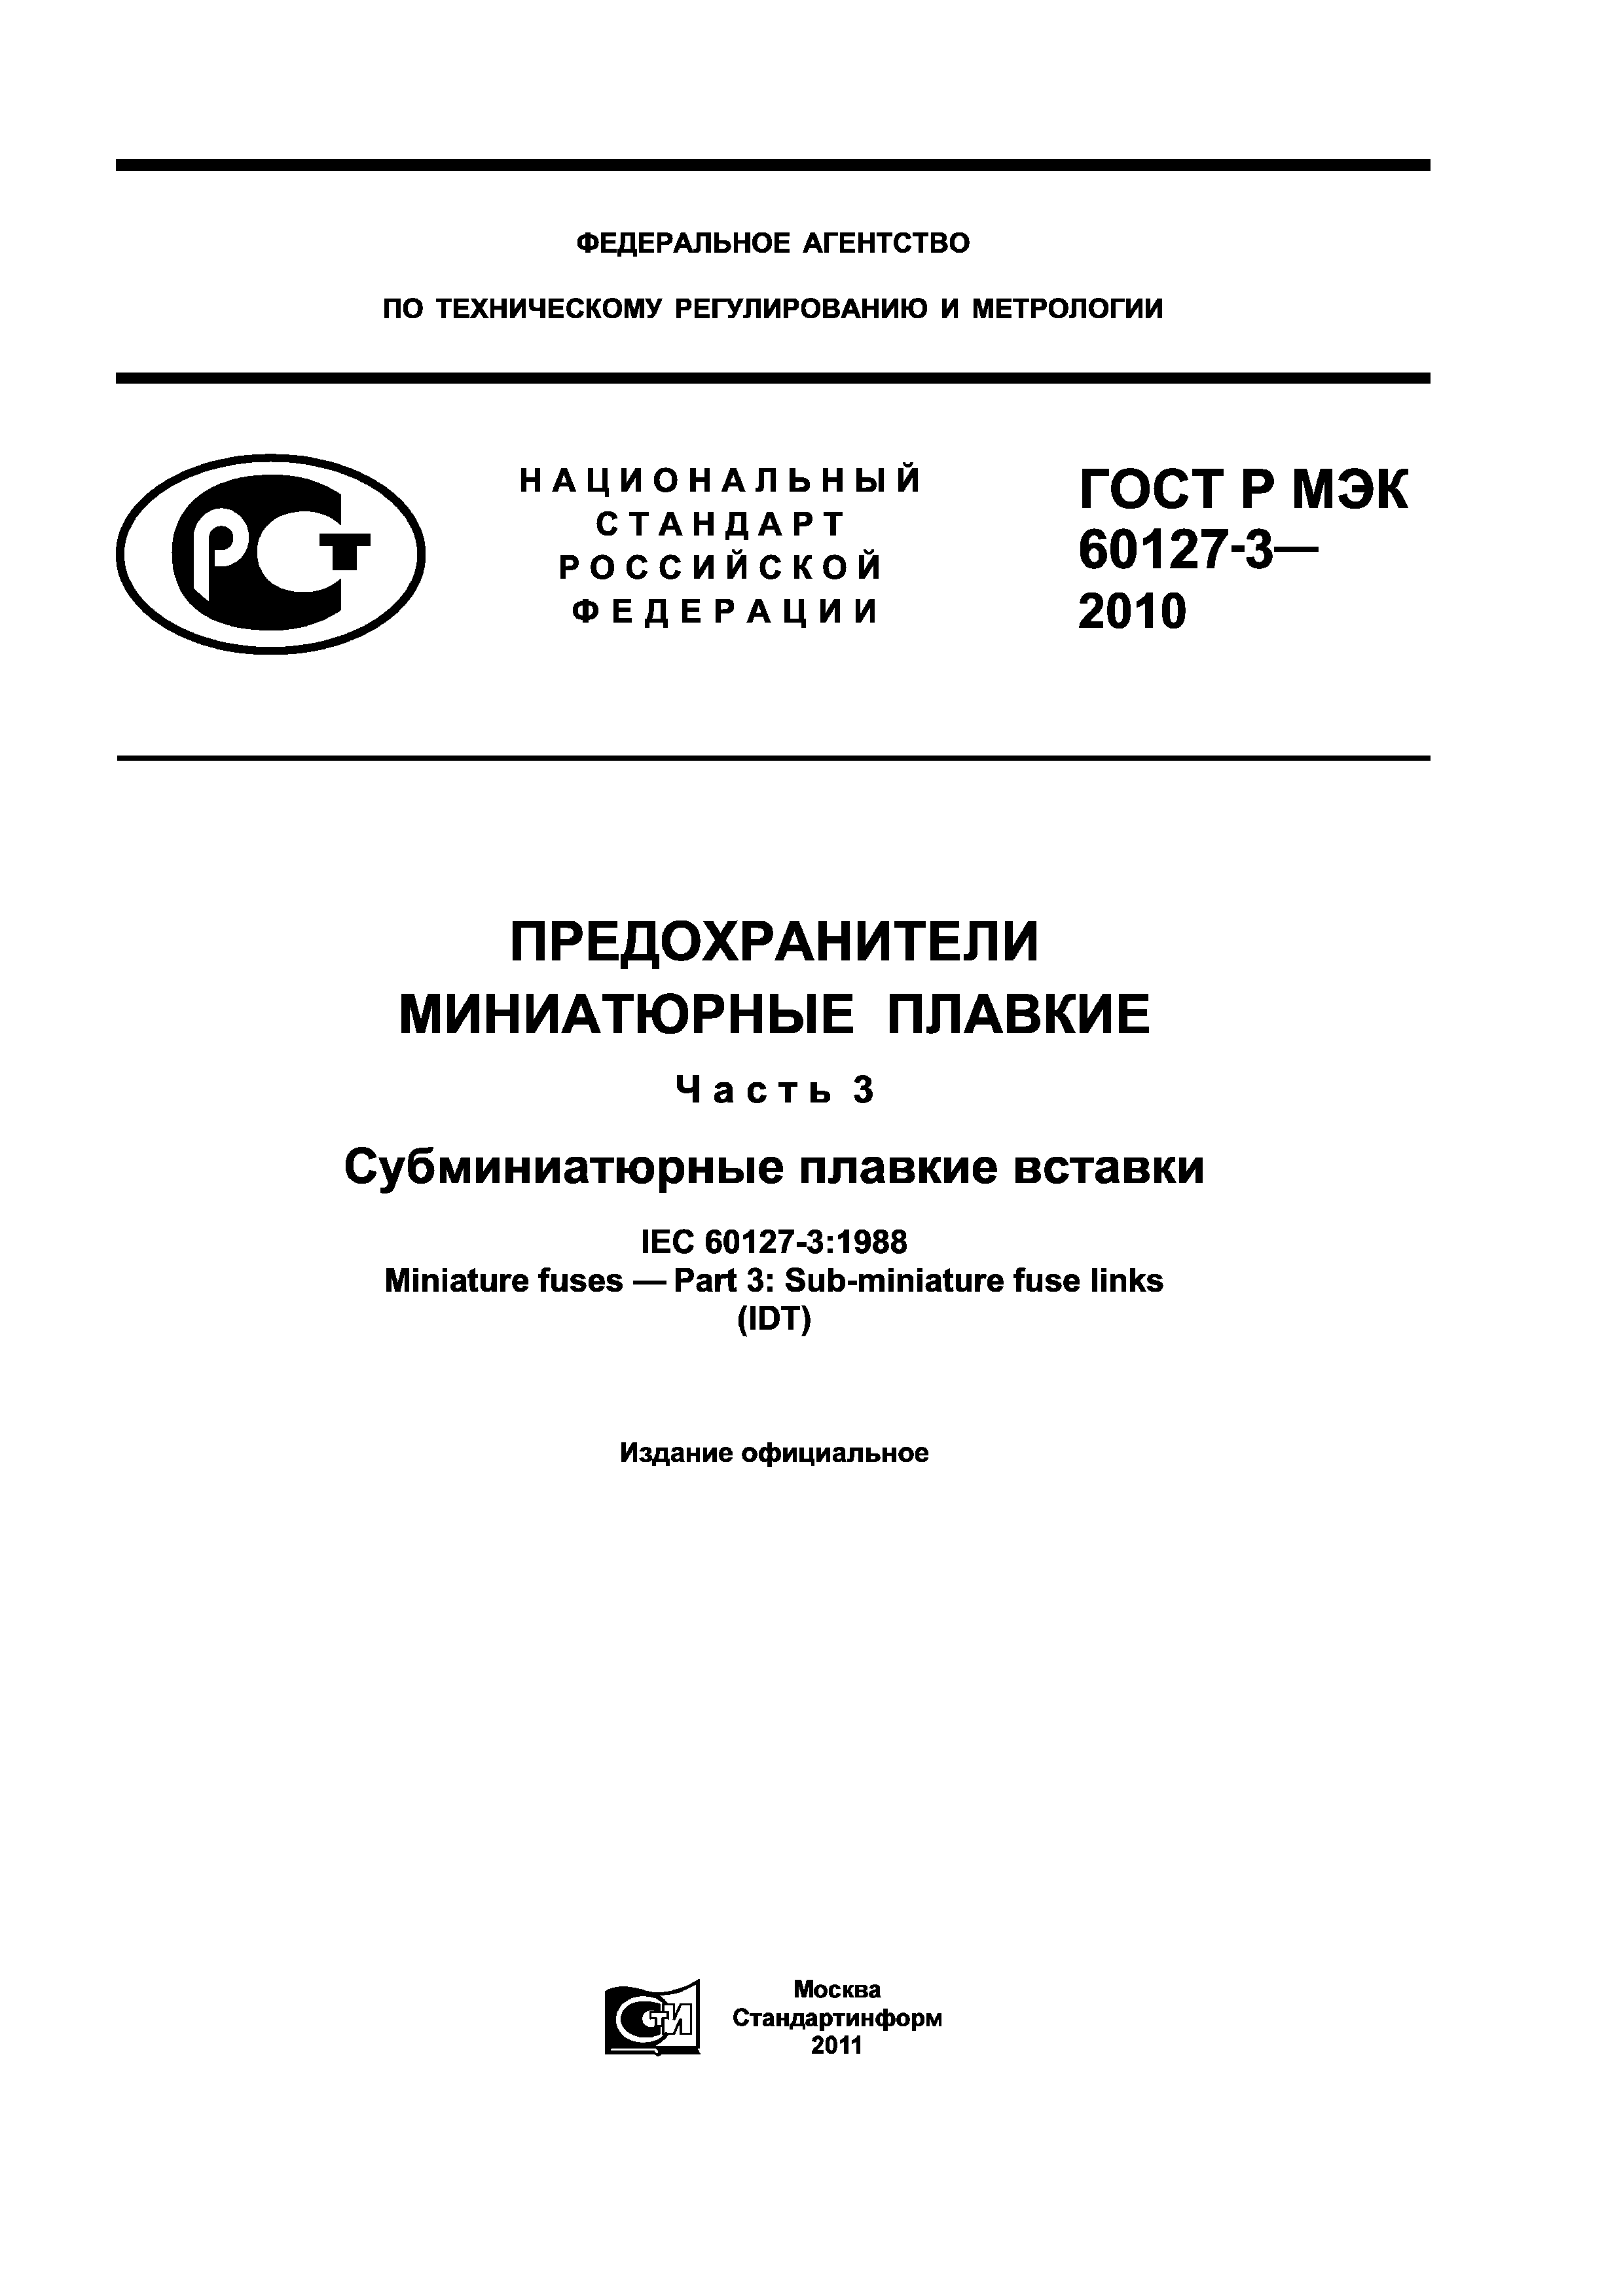 ГОСТ Р МЭК 60127-3-2010